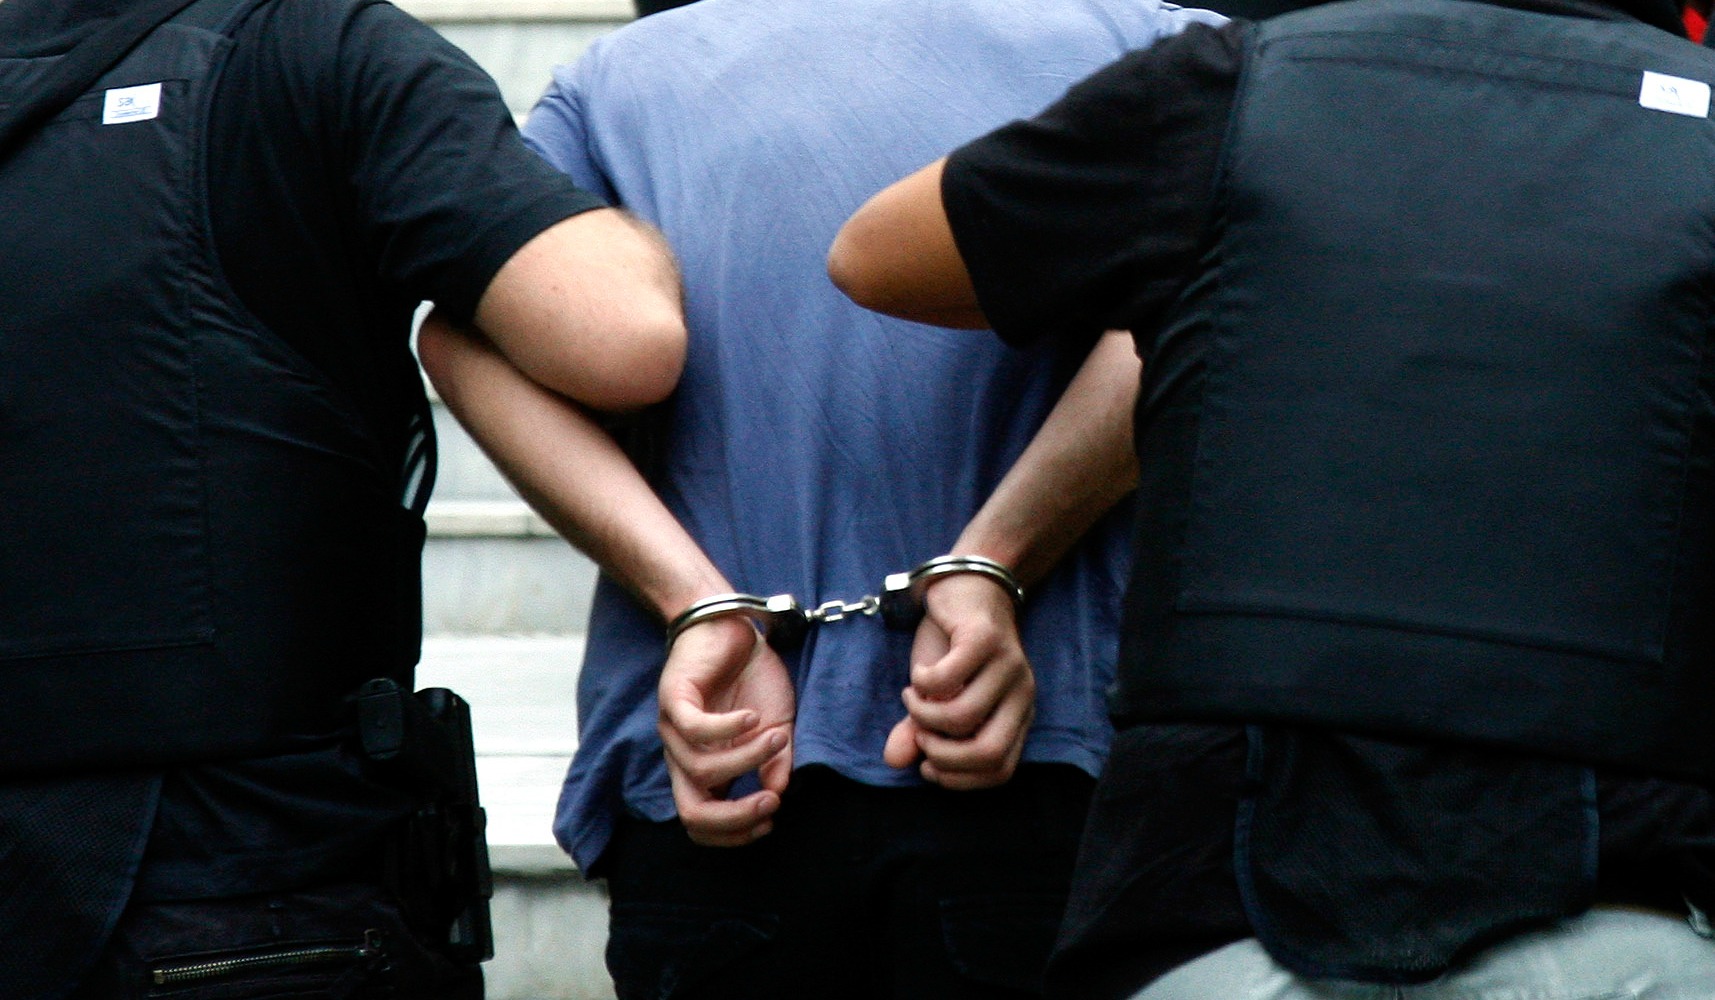 Ηράκλειο: Σε τρεις συλλήψεις για χασίς και κοκαΐνη προχώρησαν οι Αρχές (φωτό)